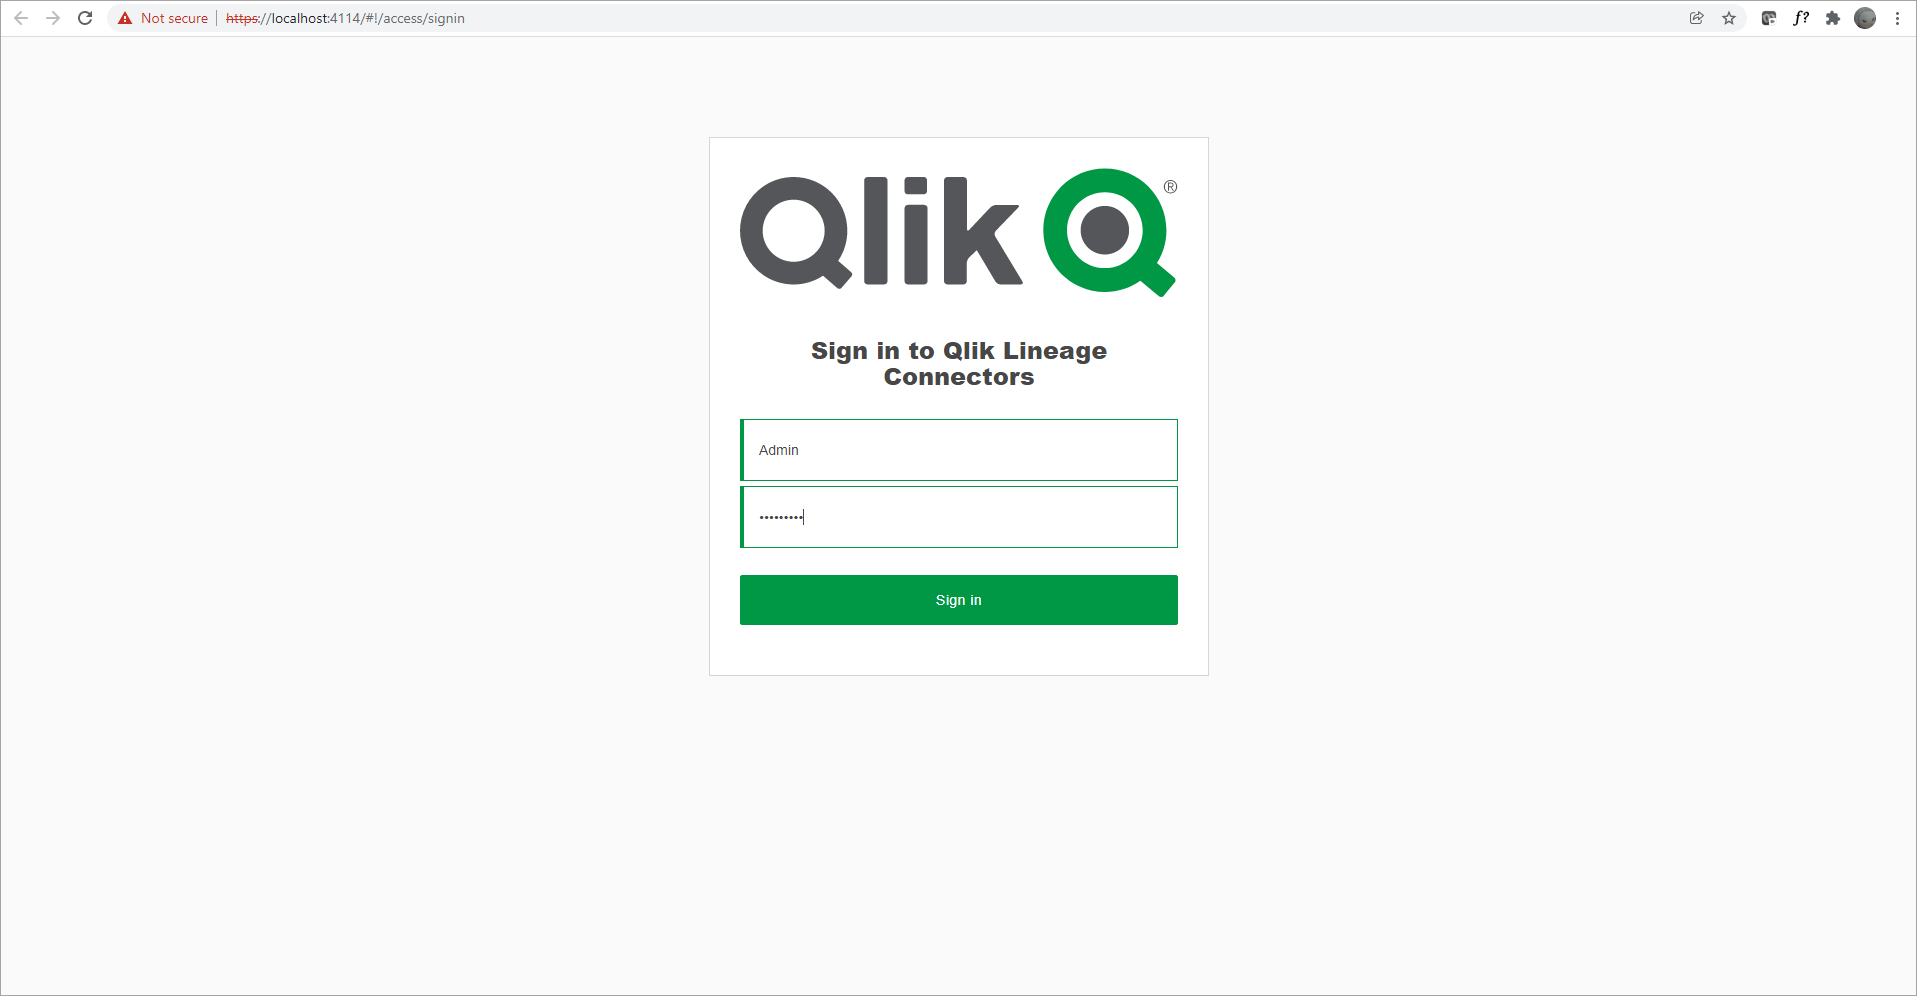 Logowanie się na stronie oprogramowania Qlik Lineage Connectors przy użyciu poświadczeń administratora